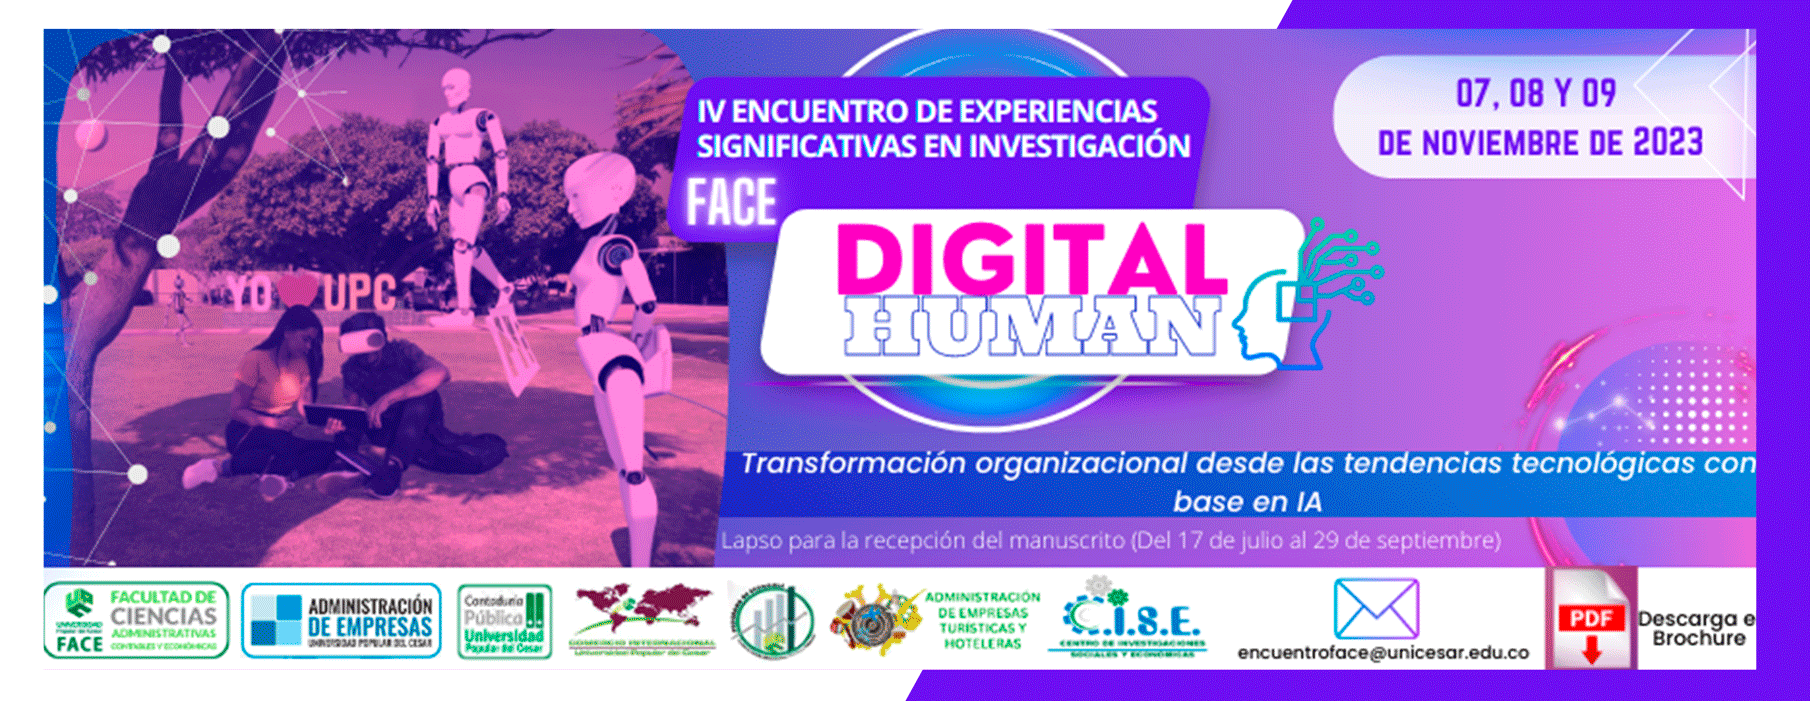 Banner IV ENCUENTRO INTERNACIONAL DE EXPERIENCIAS SIGNIFICATIVAS EN INVESTIGACIÓN DE FACE